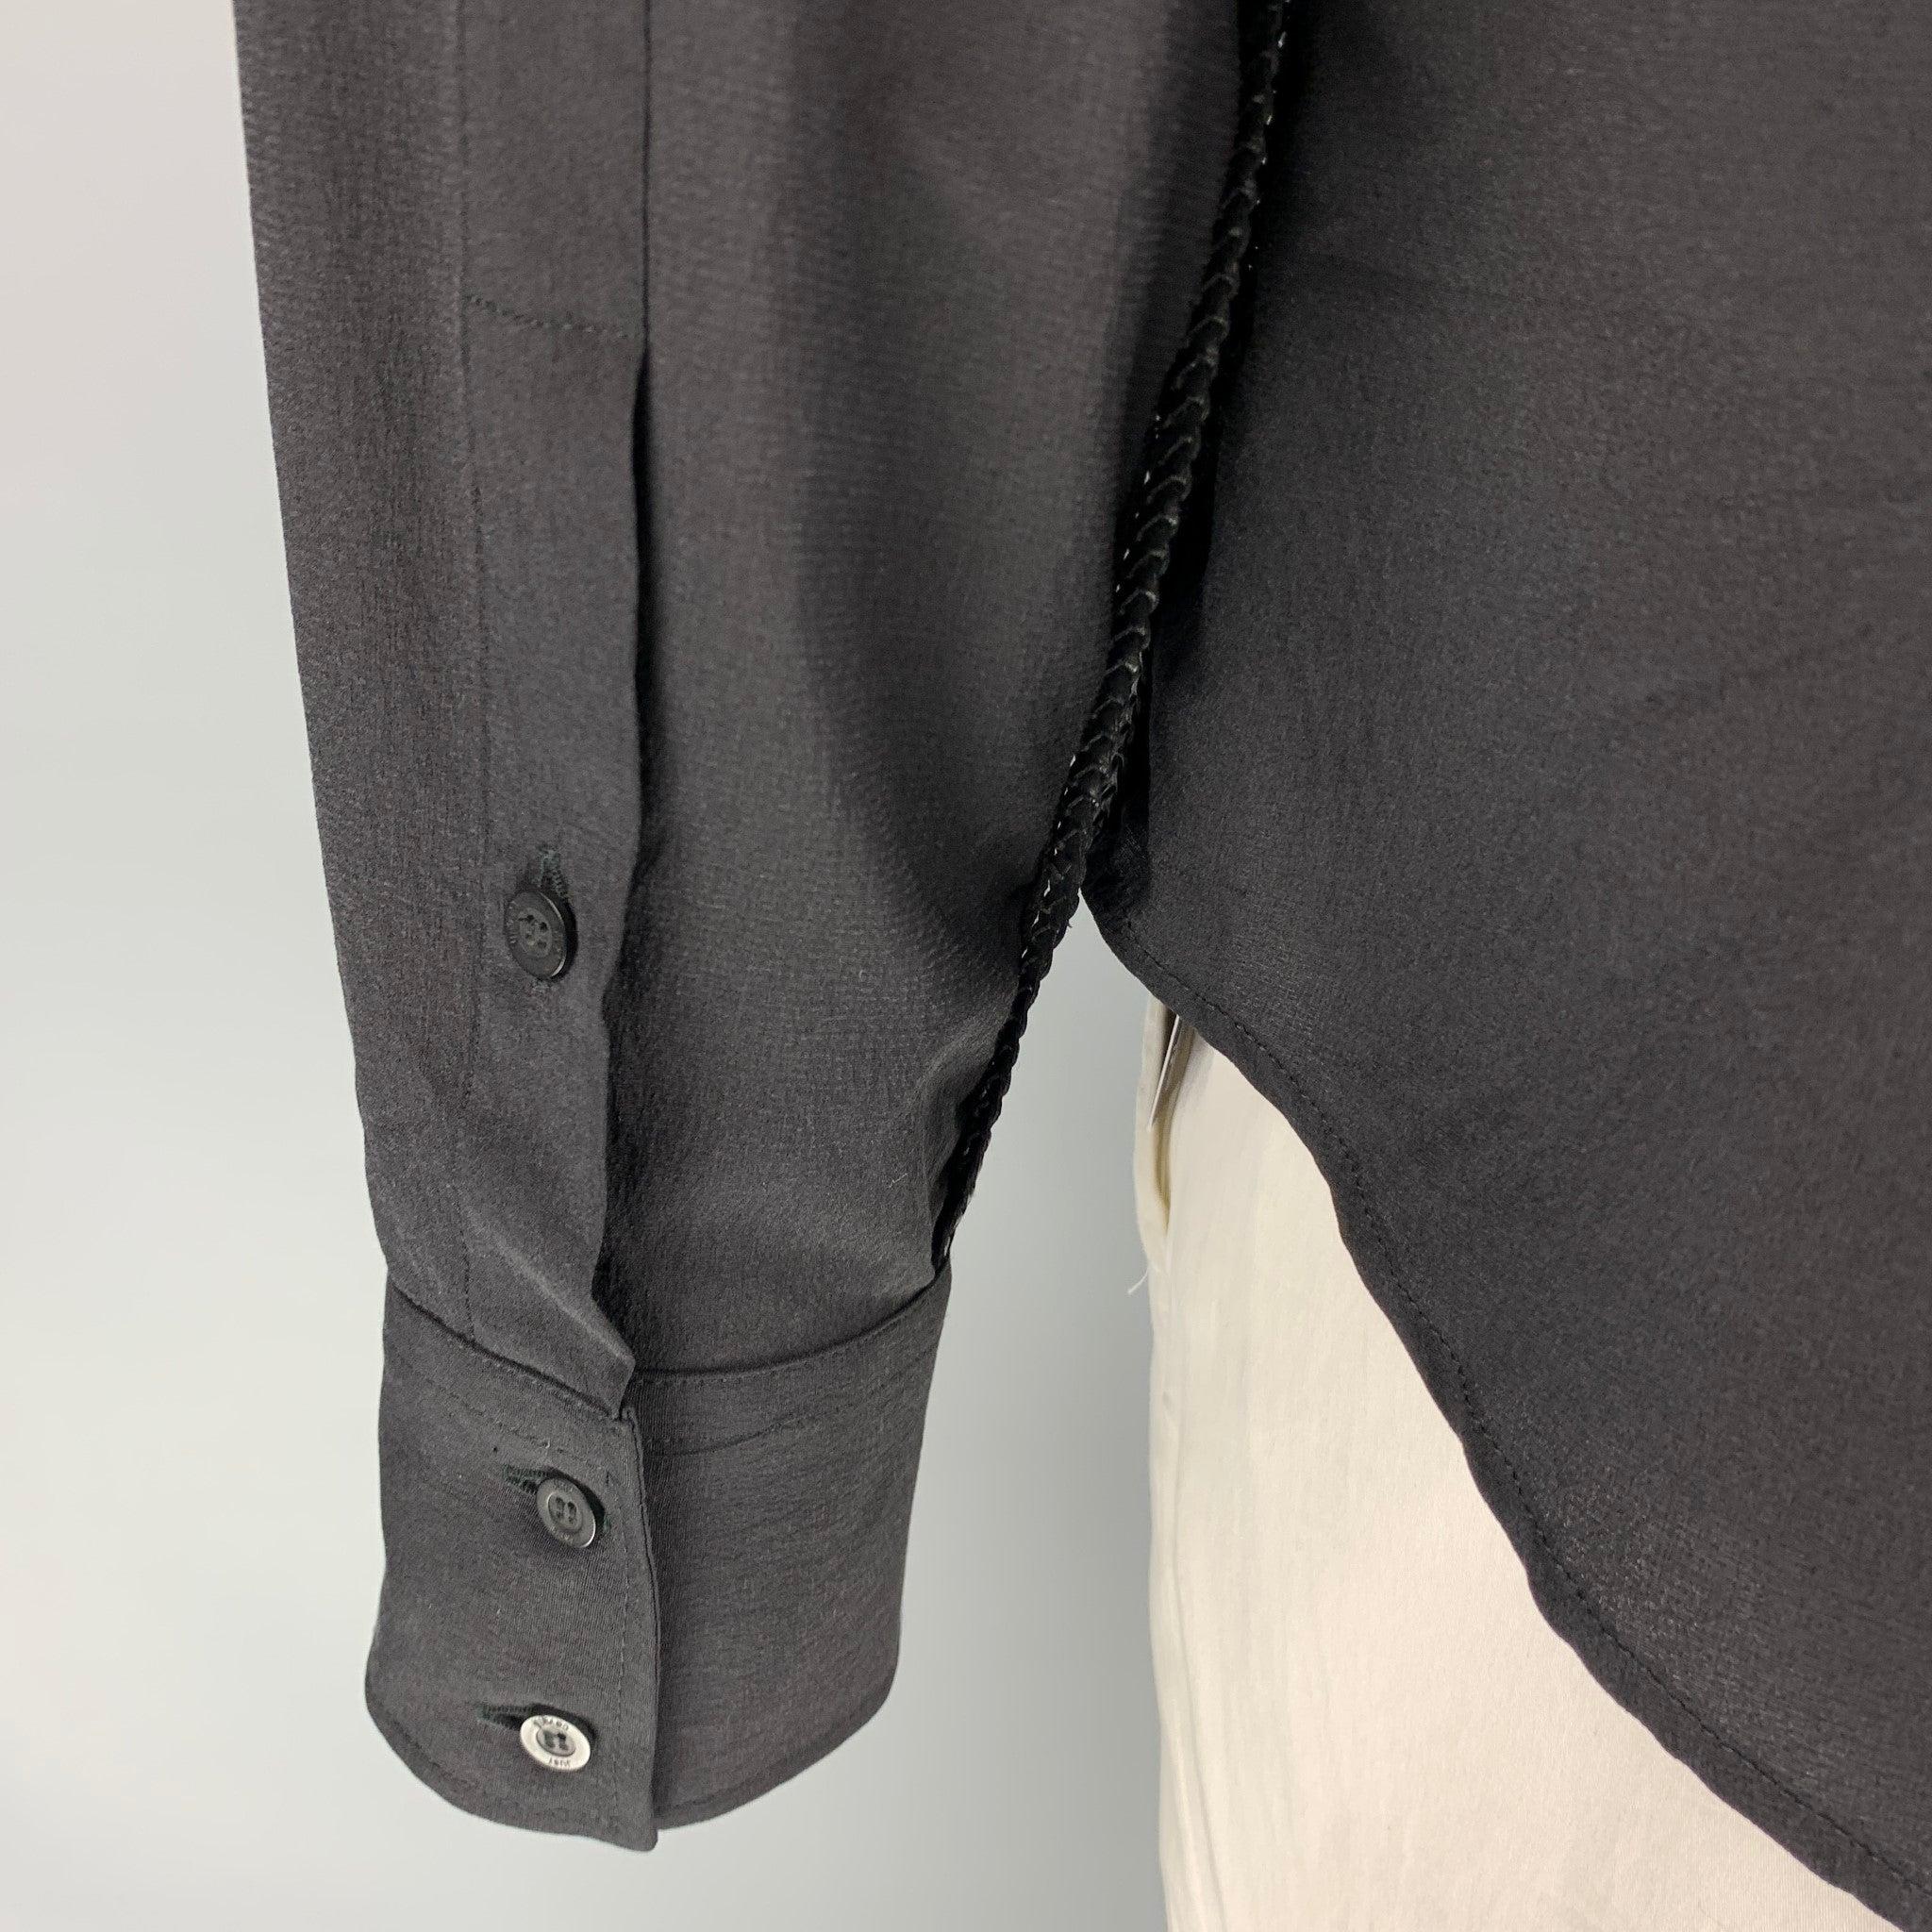 JUST CAVALLI Size XL Black Silk Button Up Long Sleeve Shirt 1